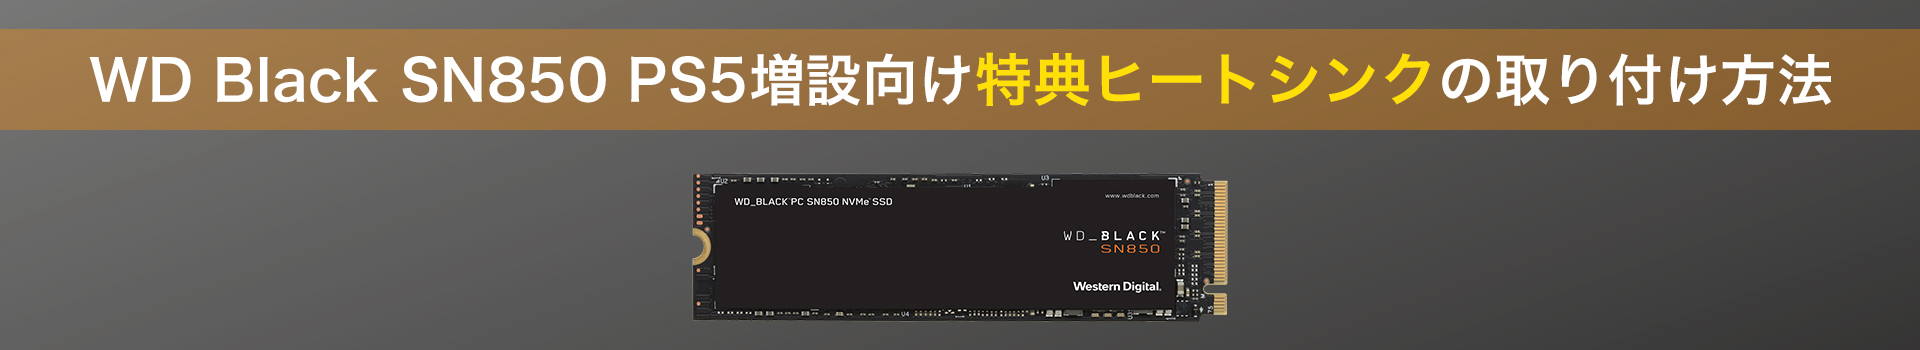 WD Black SN850 PS5増設向け特典ヒートシンクの取り付け方法